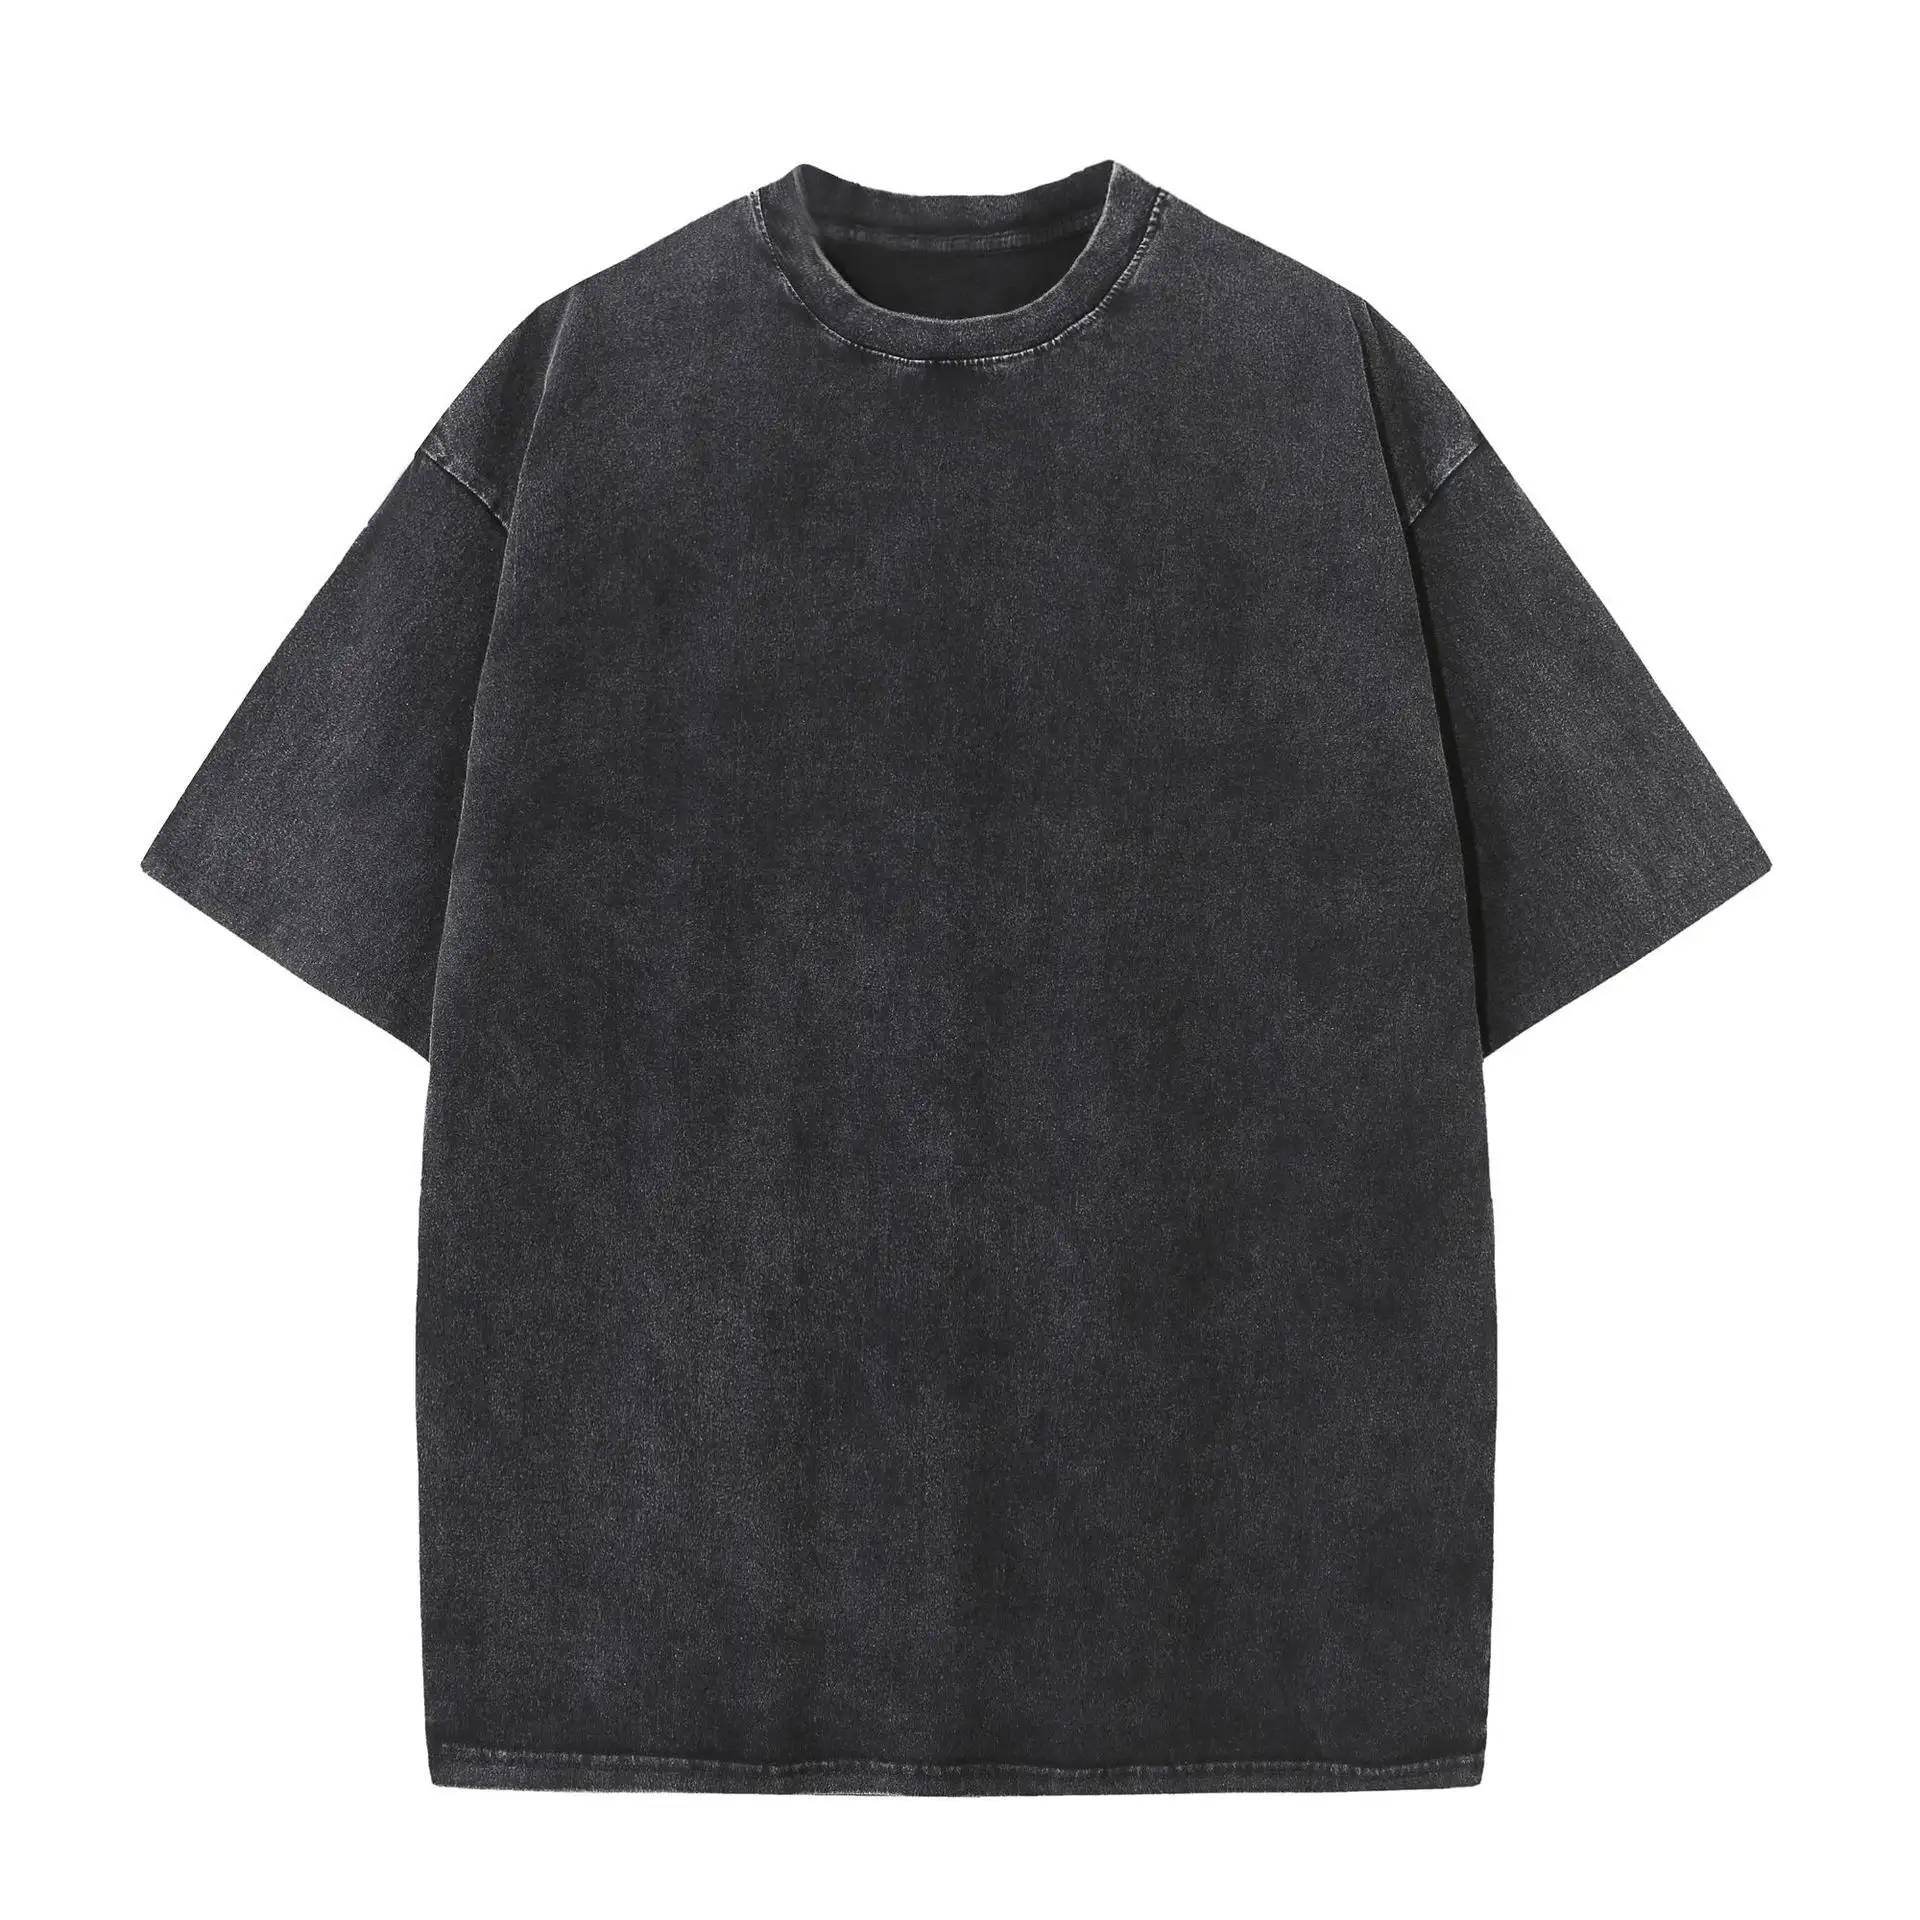 Acid Wash Vintage gota ombro oversized T shirt Streetwear hip hop lavado pesado algodão t camisas com logotipo